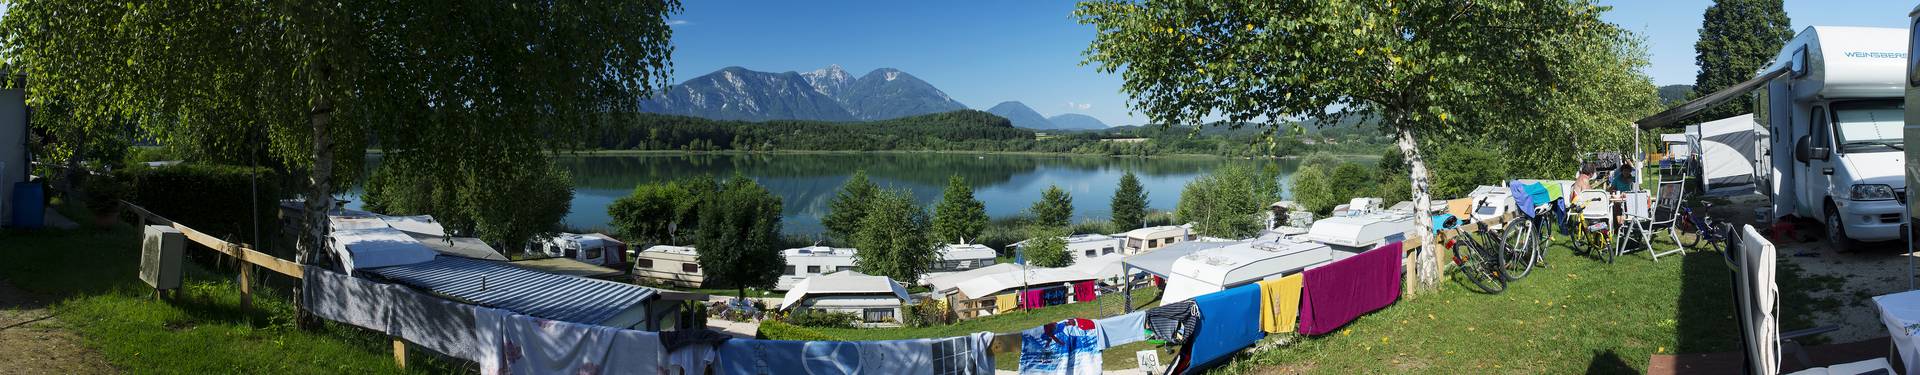 Camping in Kärnten